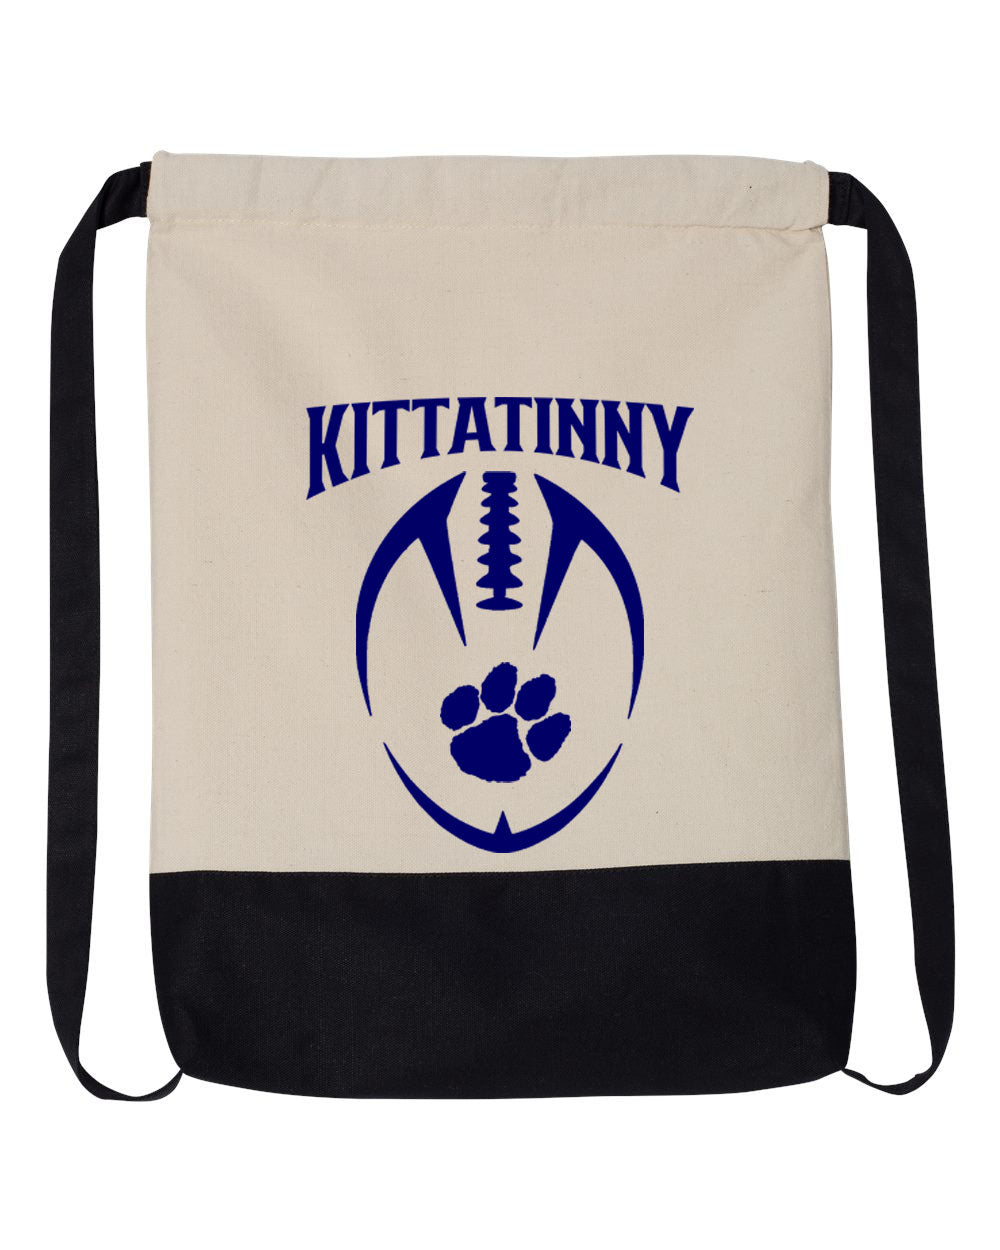 Kittatinny Football Design 8 Drawstring Bag